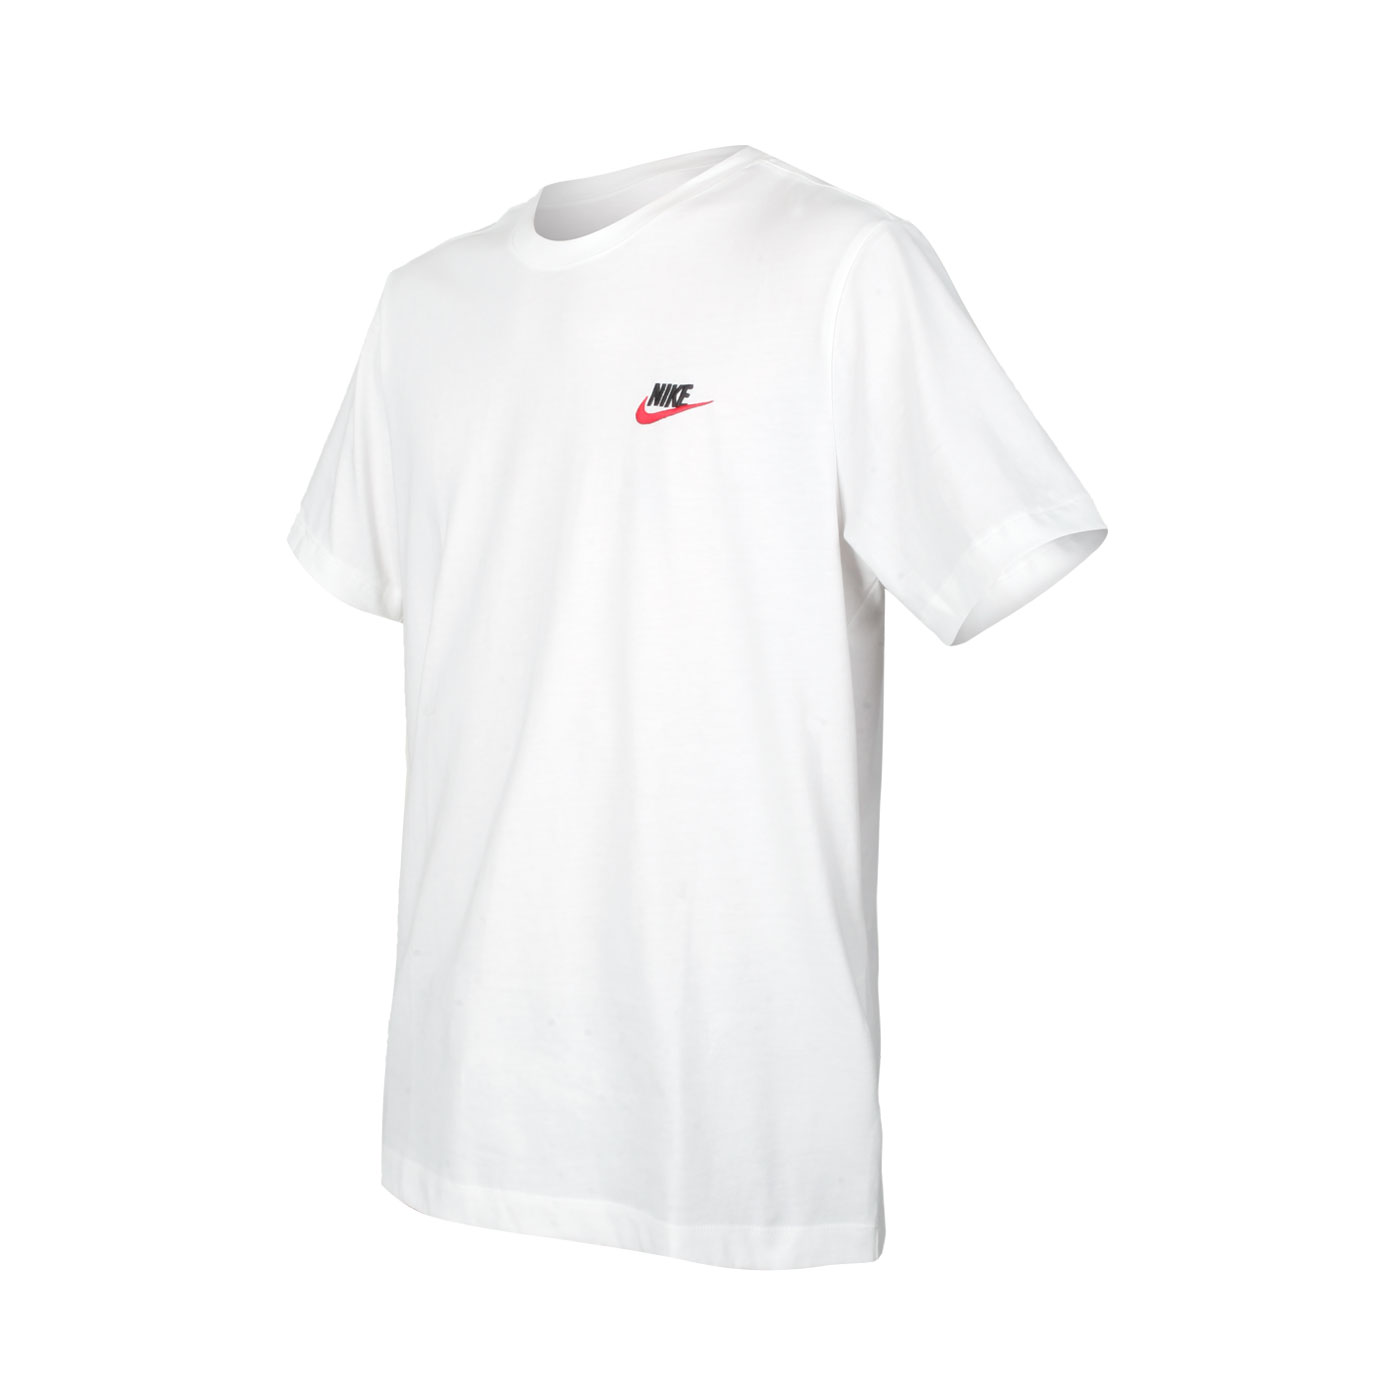 NIKE 男款短袖T恤 AR4999-100 - 白紅黑